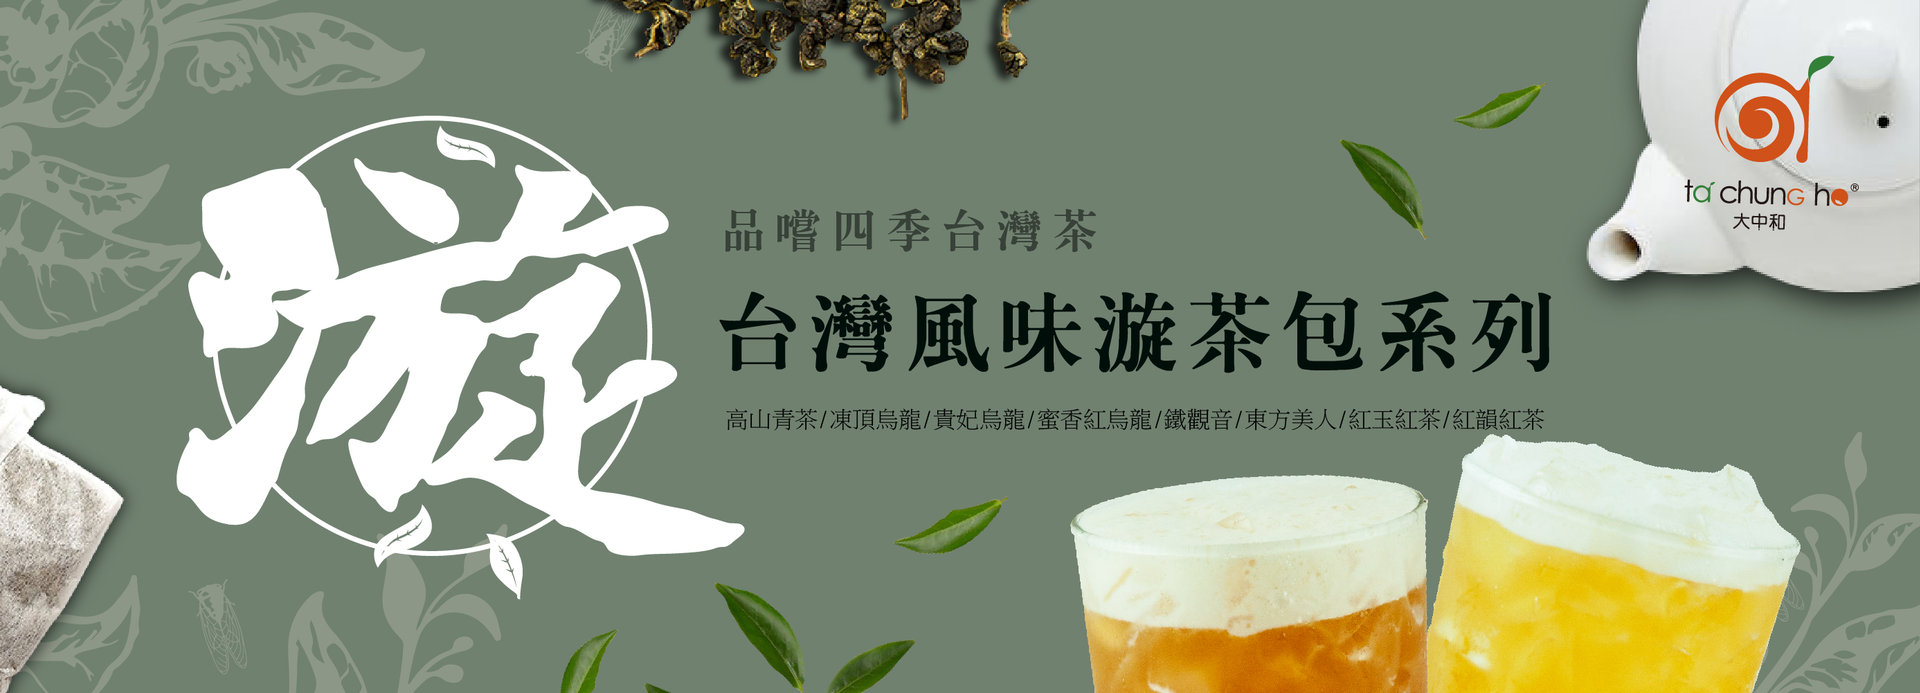 【2019夏季新品】八款台灣風味漩茶 